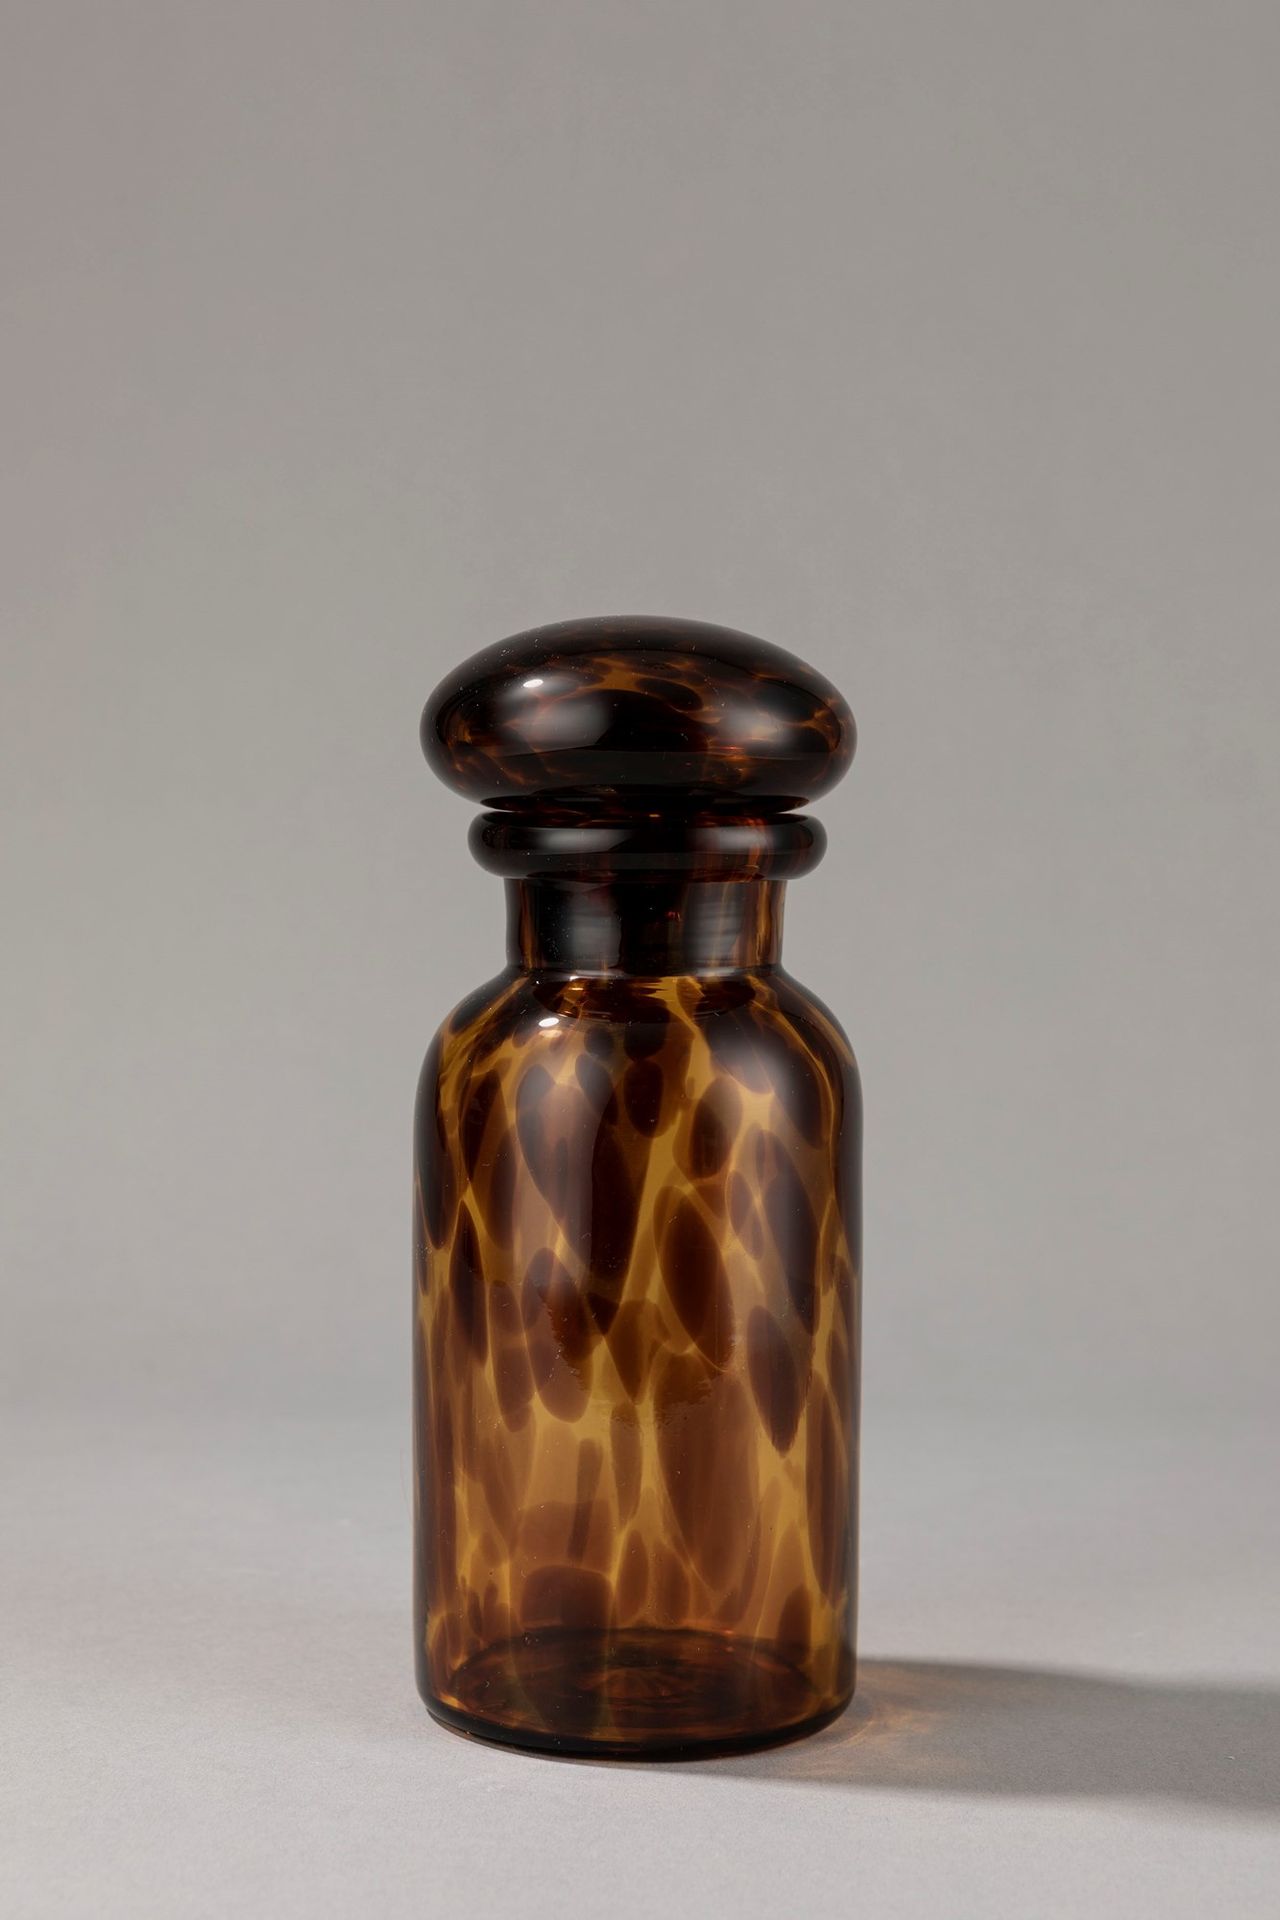 Barovier e Toso Bottle, 1970 ca.

H 20 x diam 10 cm
Murano blown glass.